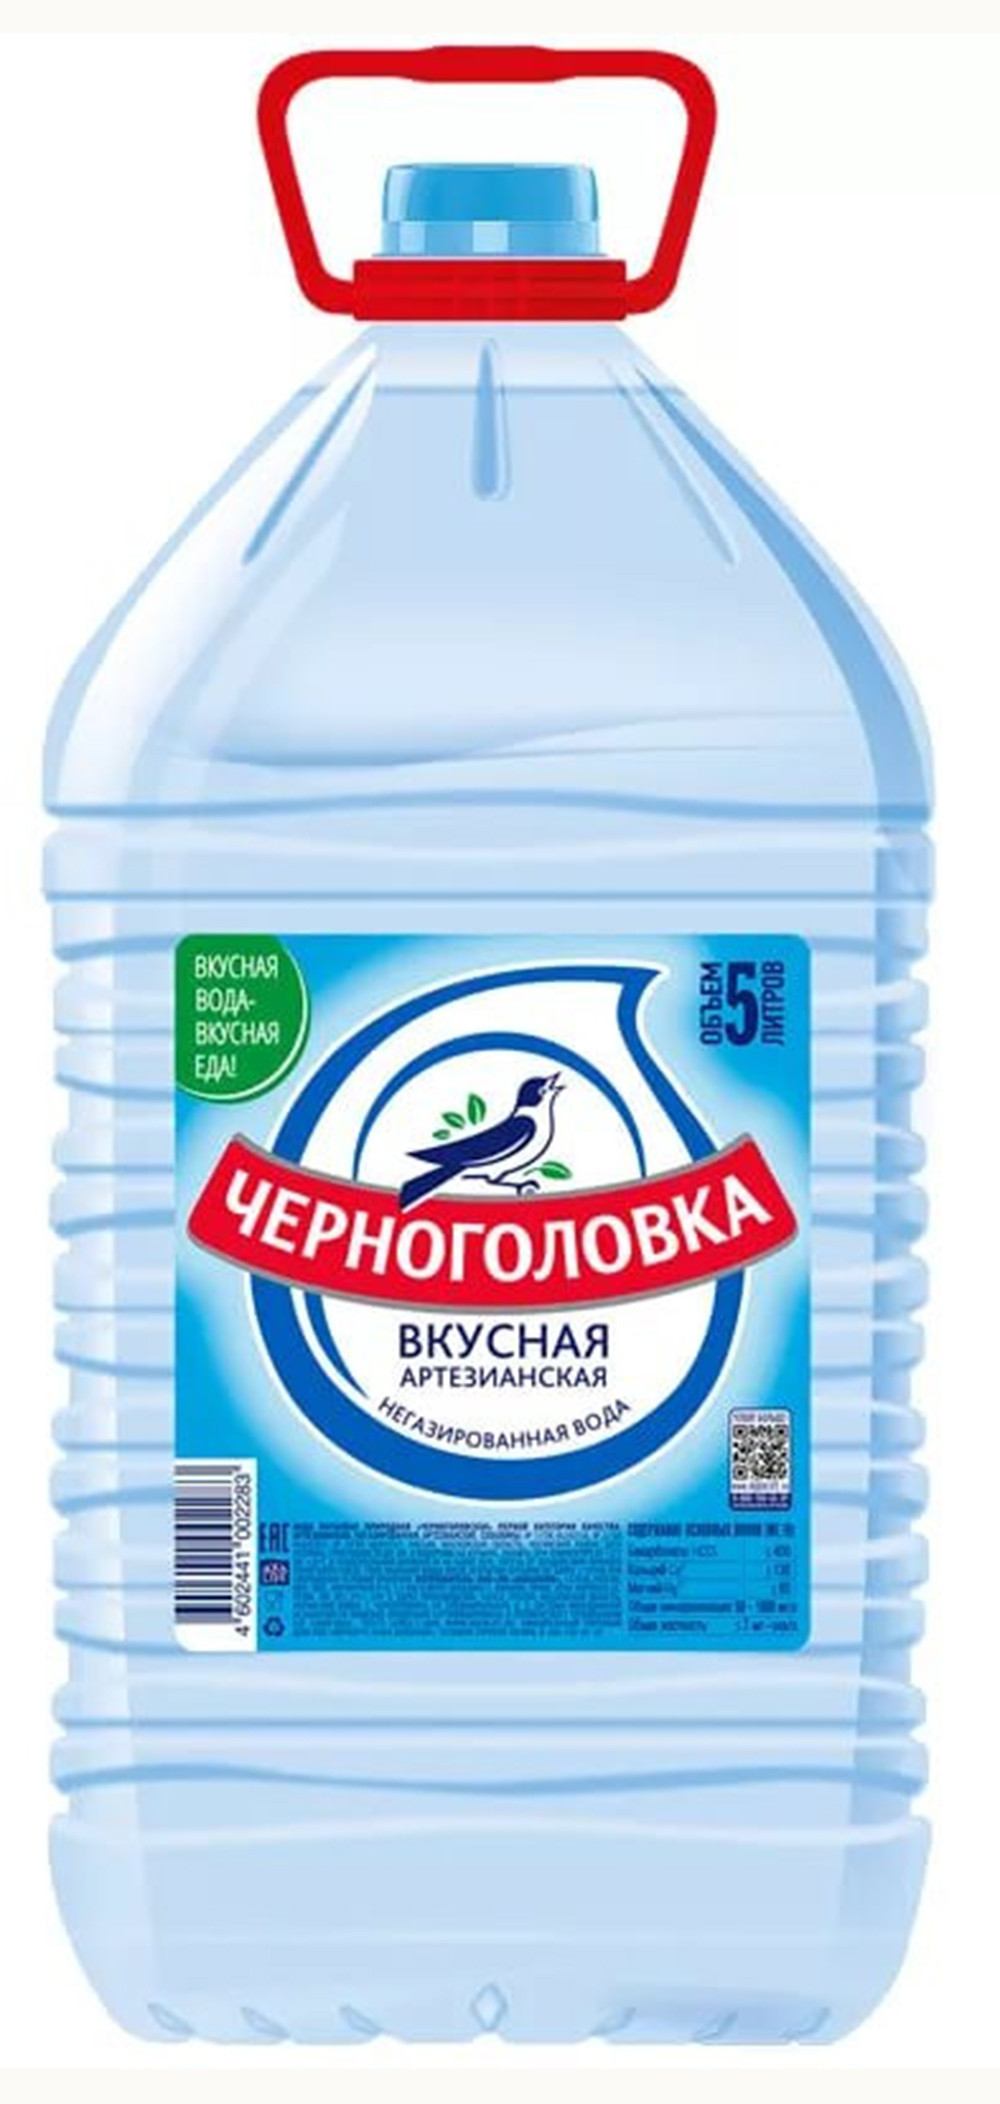 Пит. вода Черноголовская н газ бут 5.0 л - интернет-магазин Близнецы